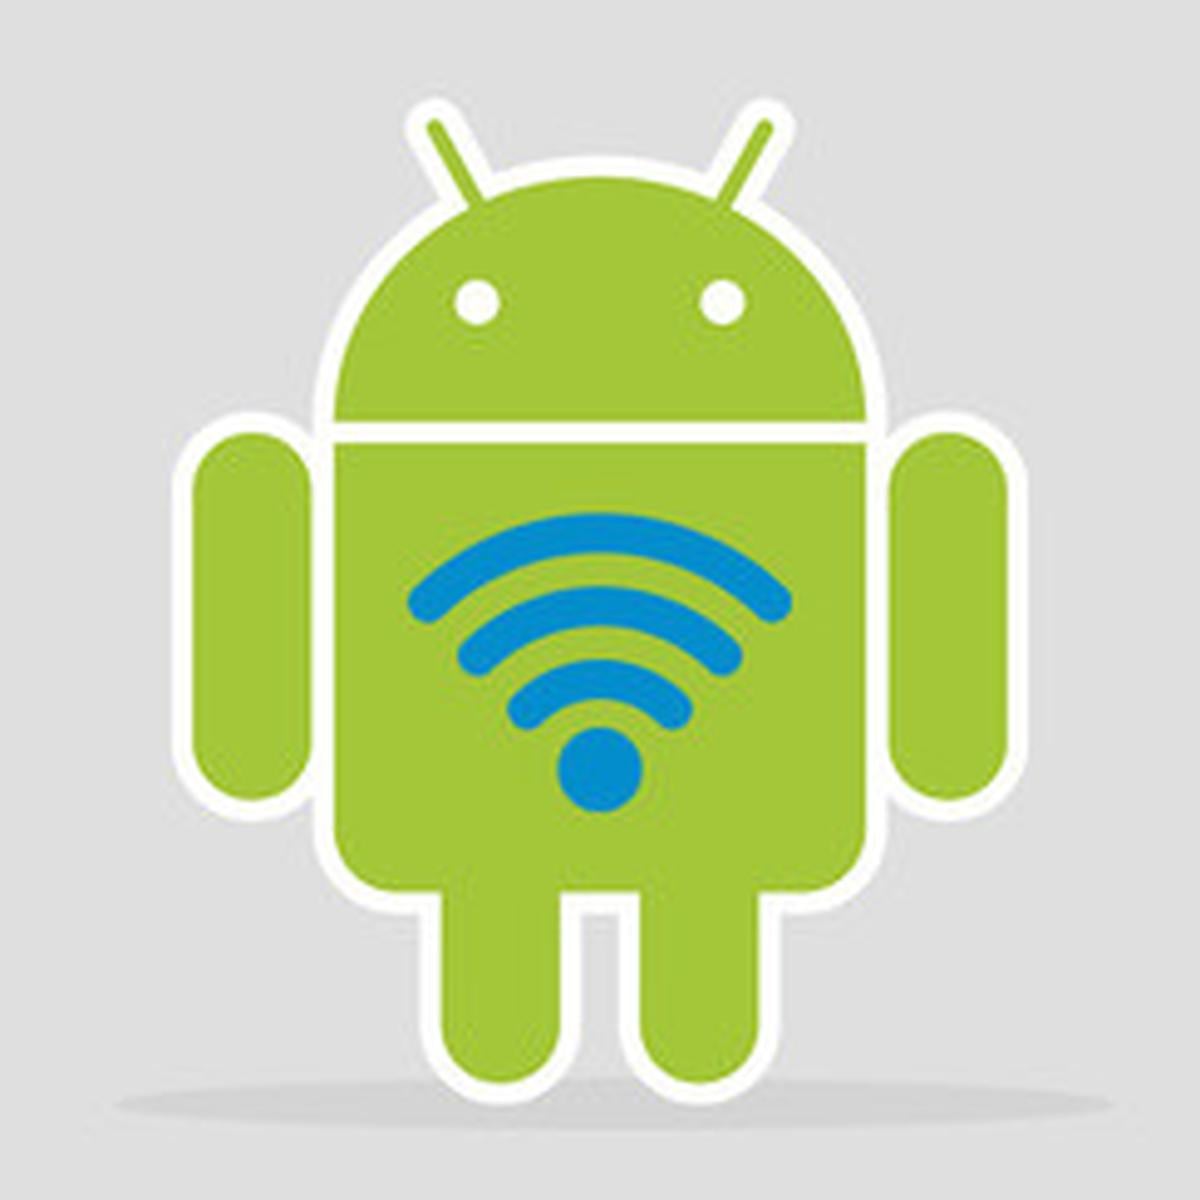 Android, El truco para expandir la señal de una red wifi utilizando tu  antiguo celular, Sistema operativo, Celulares, Aplicaciones, Cobertura, Smartphone, Tecnología, Truco, Tutorial, Repetidor, nnda, nnni, DEPOR-PLAY